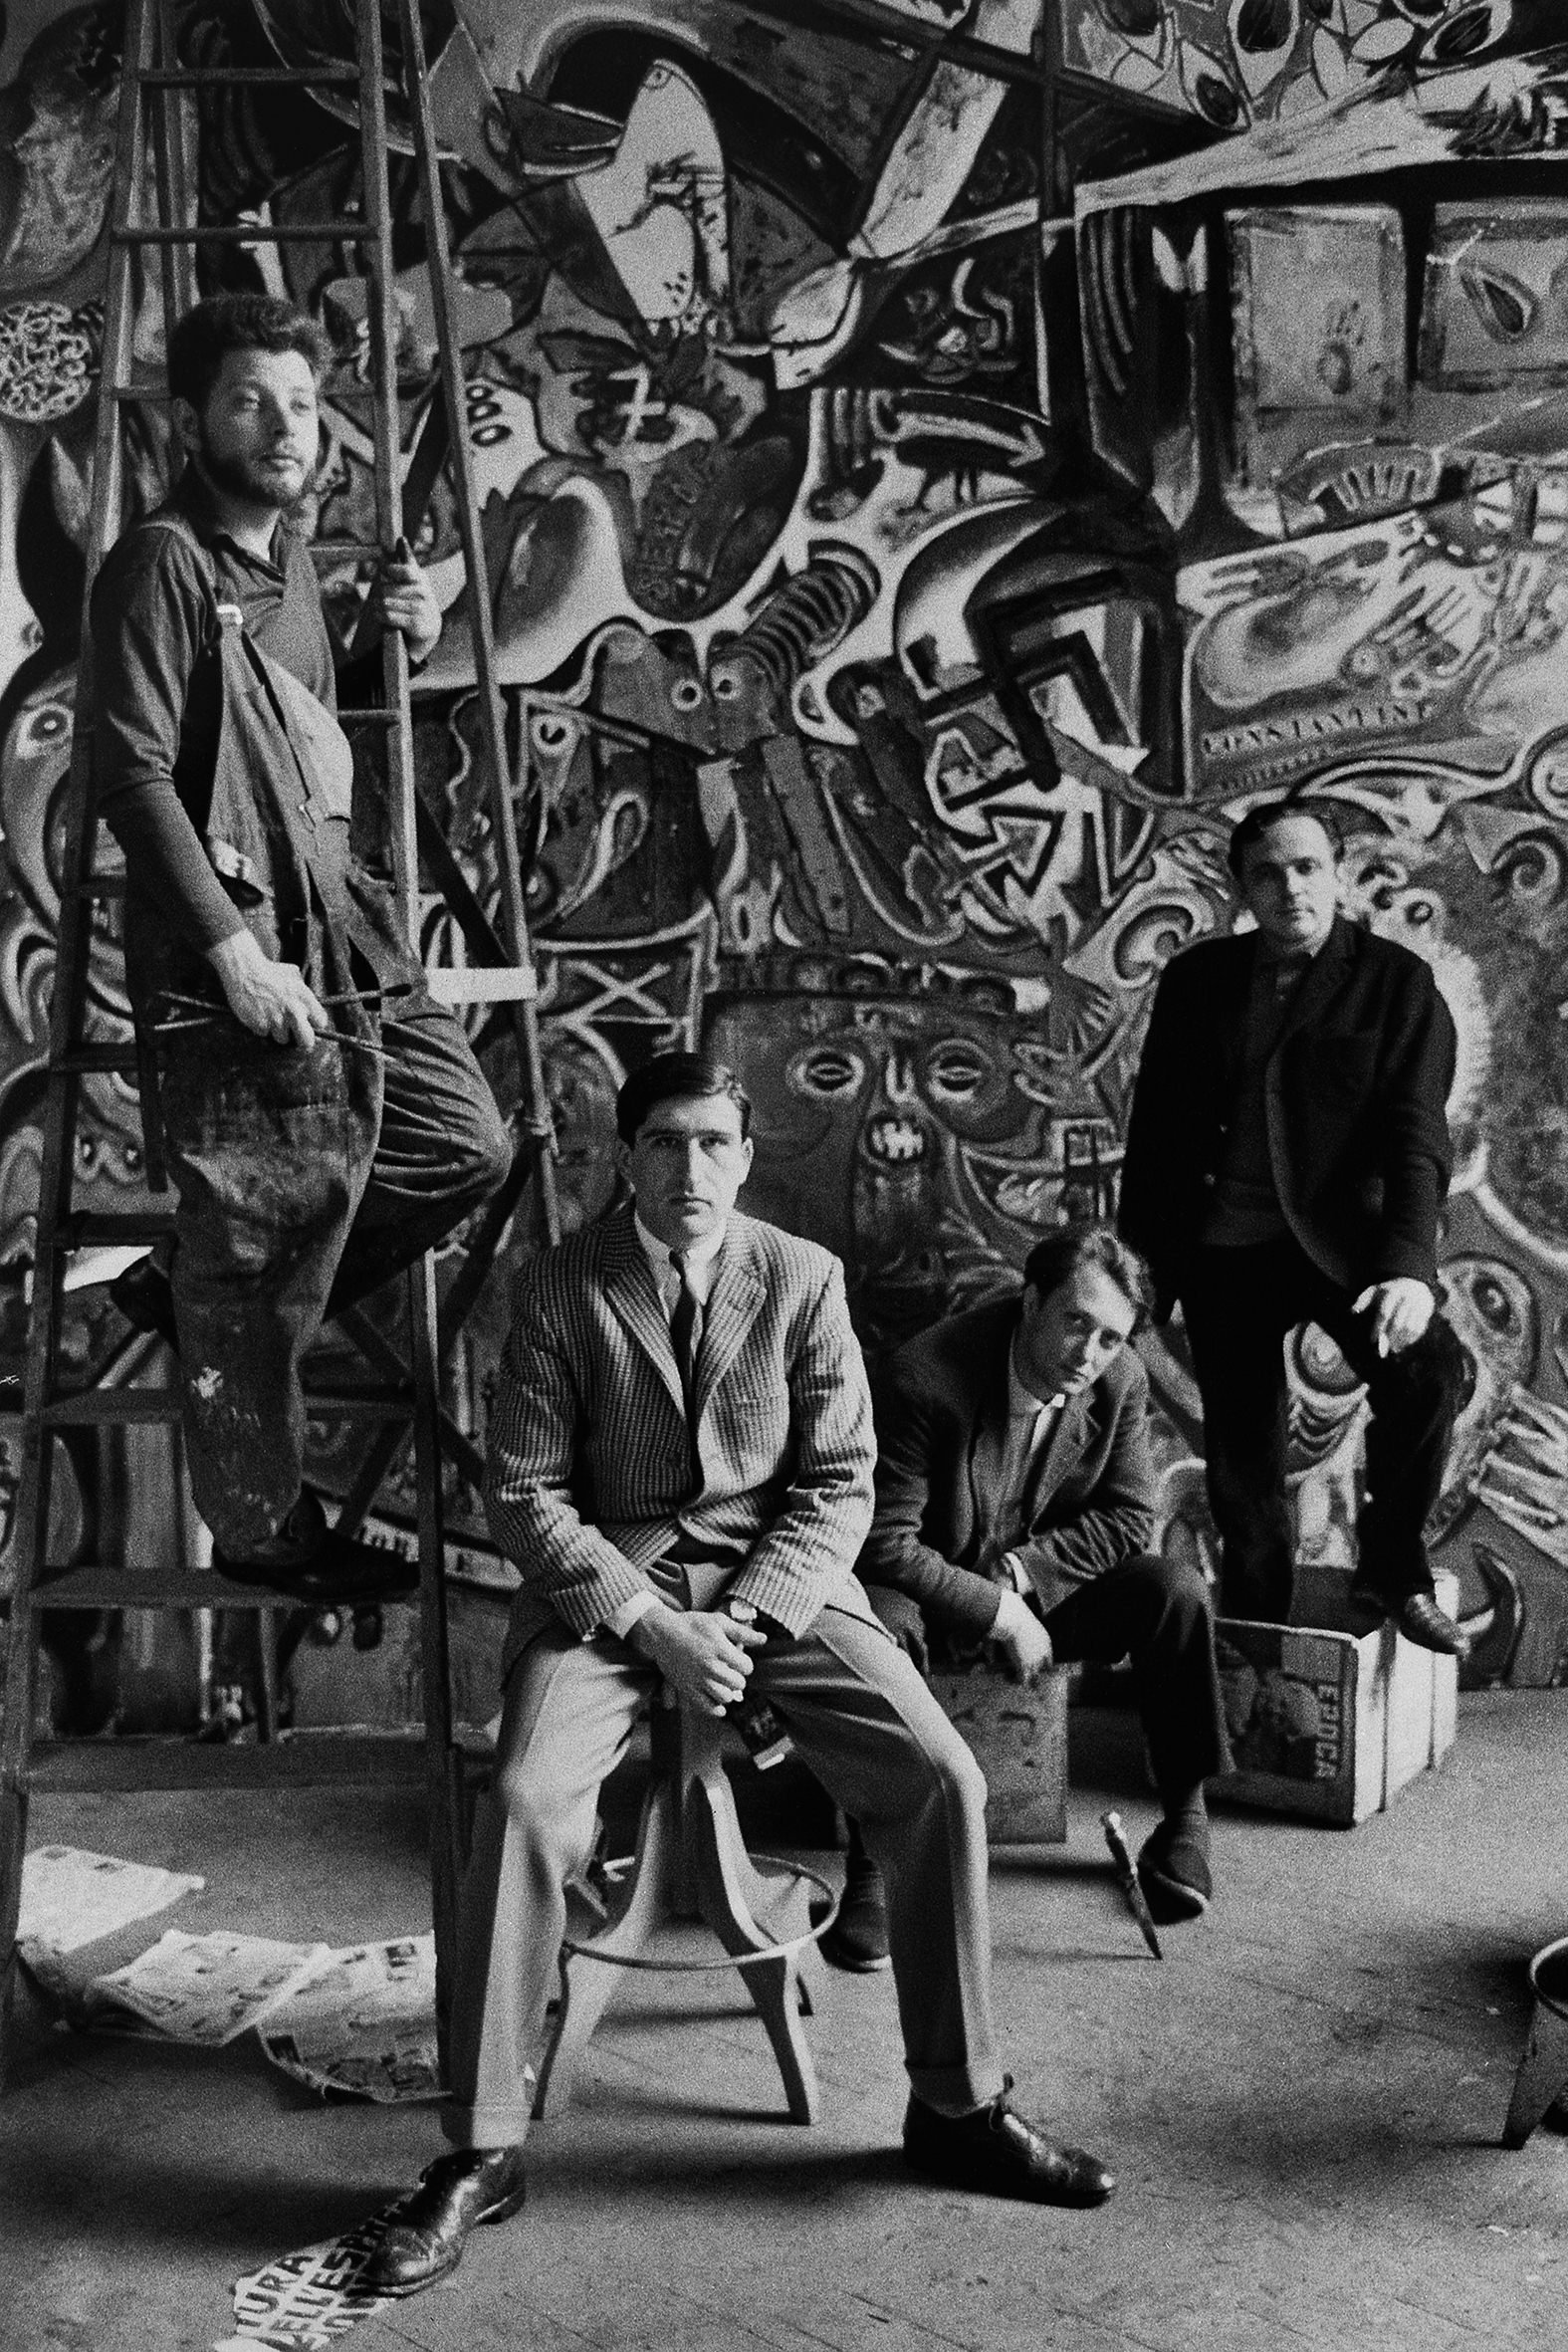 ARTISTI - 1 – Nello studio di Roberto Crippa, Milano durante il lavoro su Grande Quadro Antifascista Collettivo, con Jean-Jacques Lebel, Vario Adami, Tancredi Parmeggiani e Alain Jouffroy, 1960